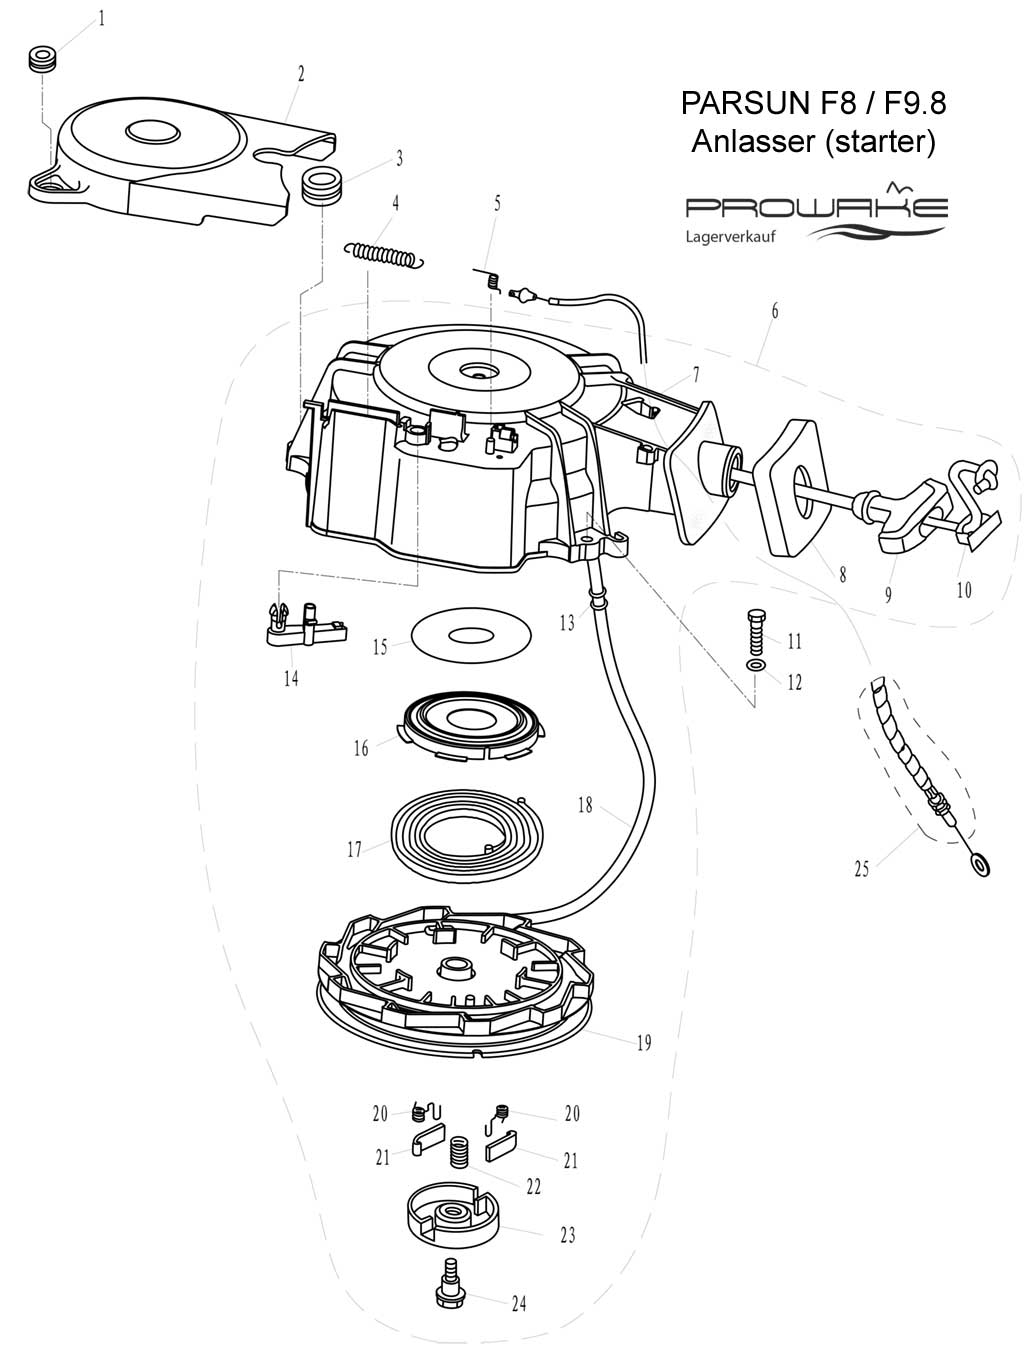 Parsun F4/F5  Ersatzteile / Spare Parts: Anlasser